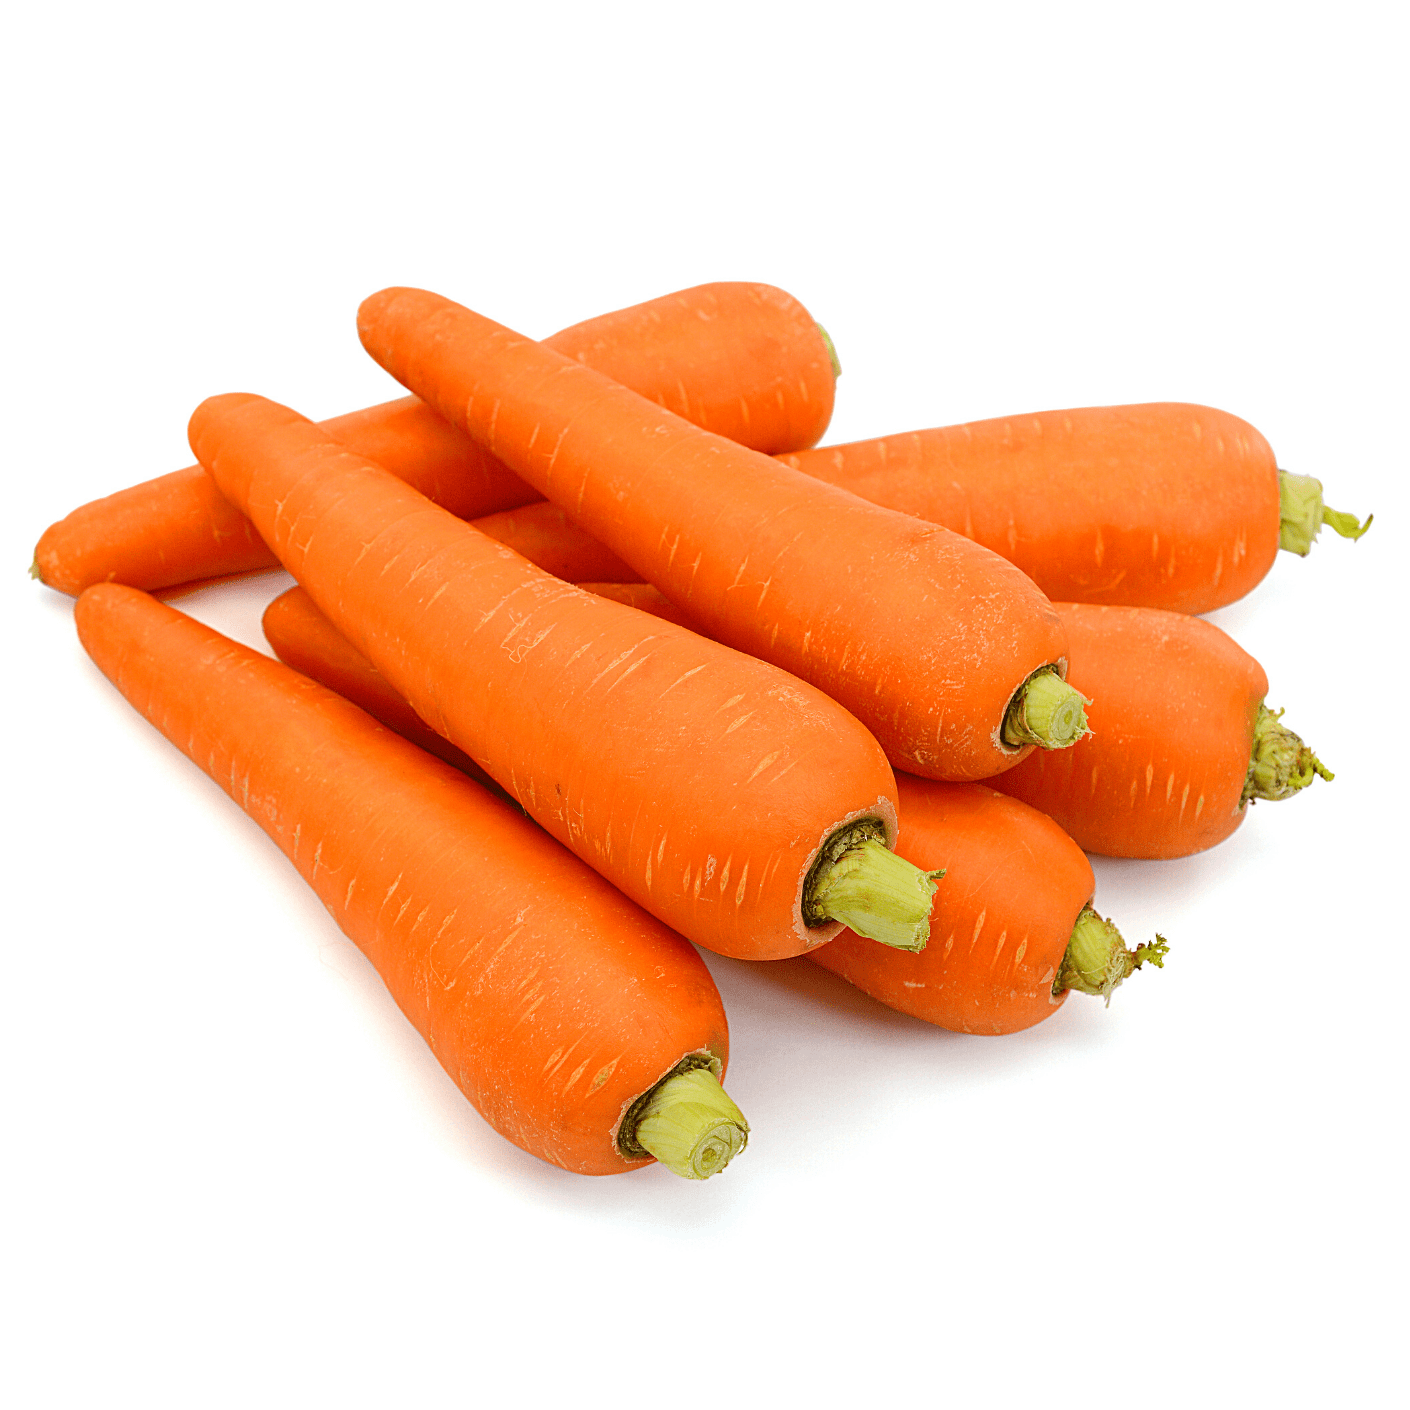 Karooto (carrot) 1Kg